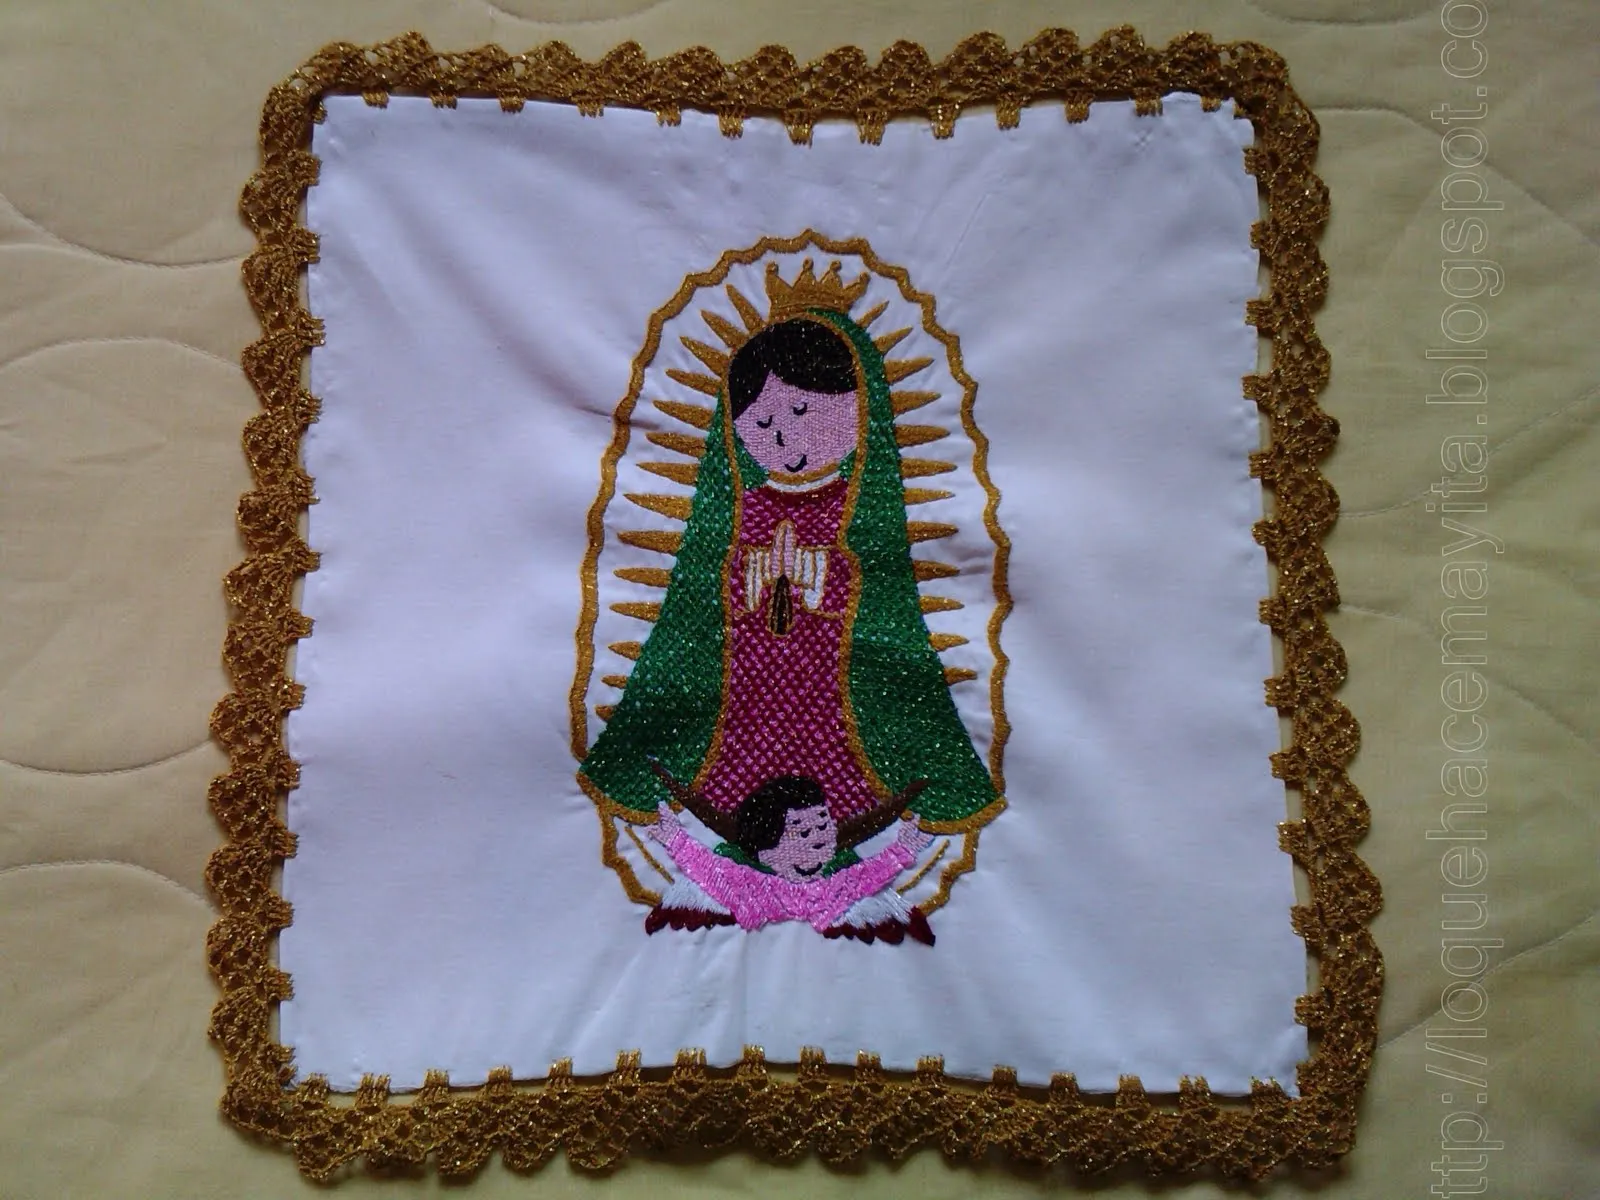 Lo que hace May-ita: Virgen de guadalupe Caricatura